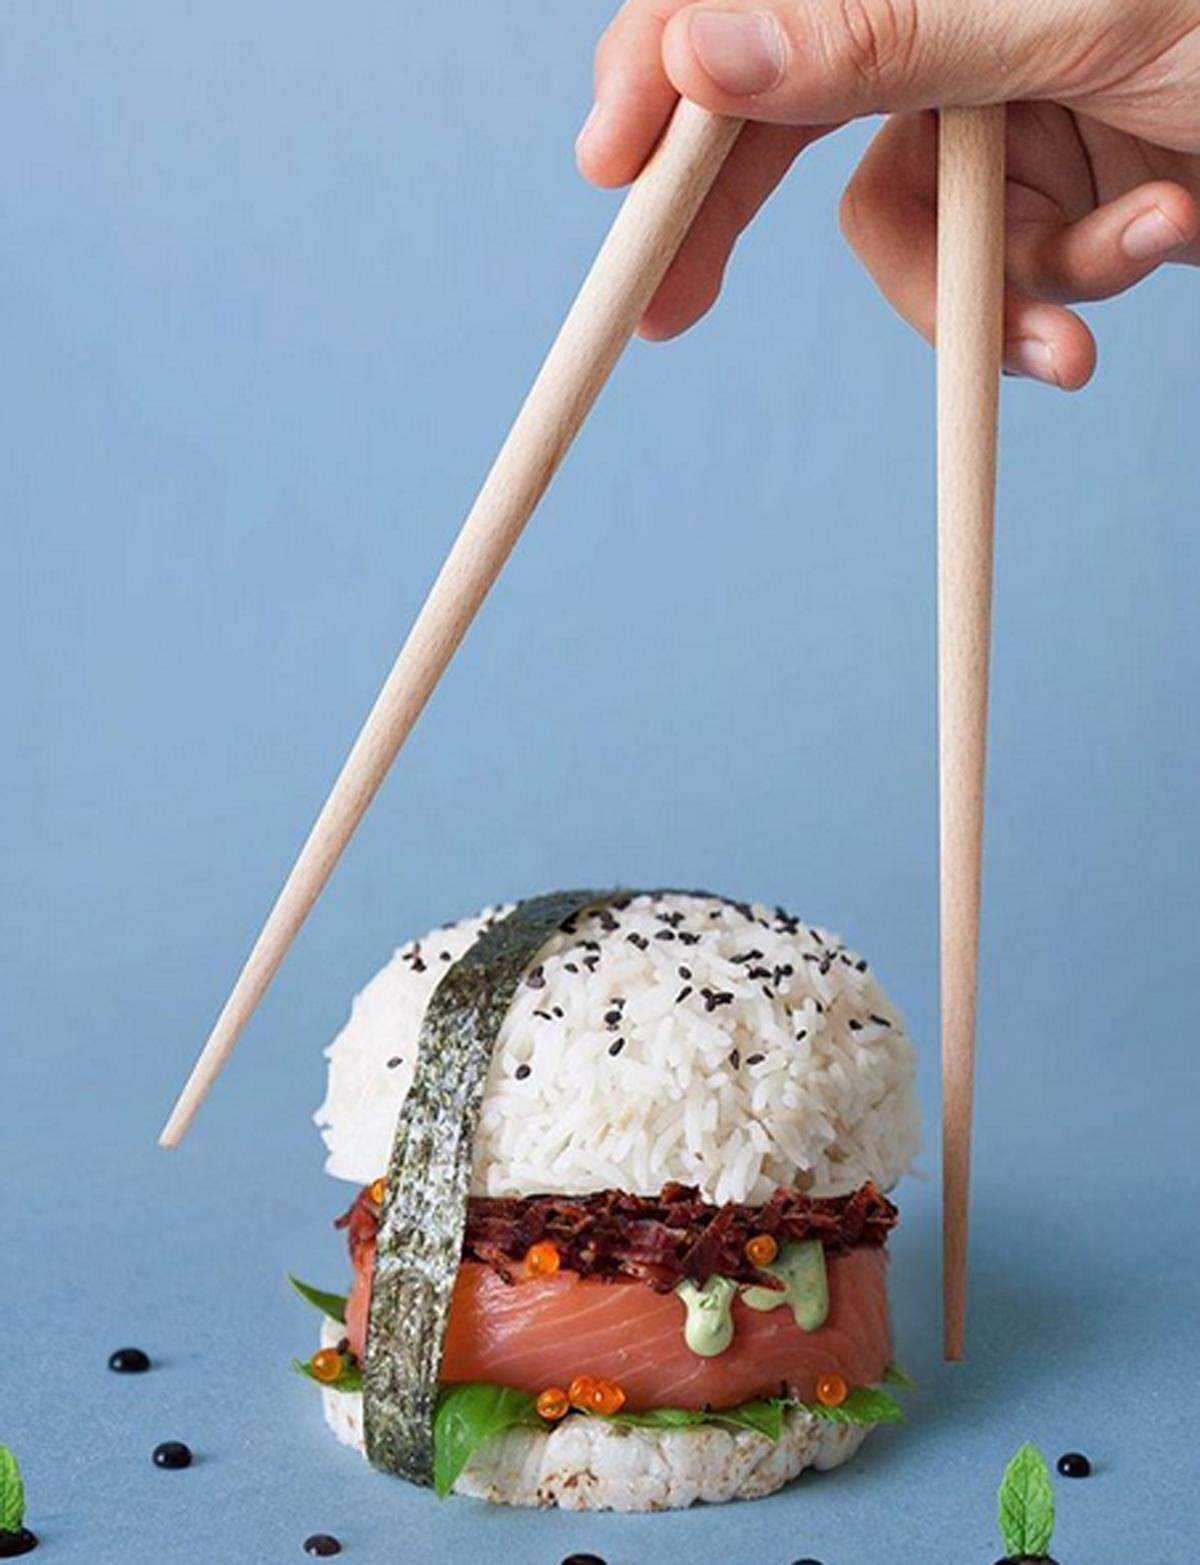 Statt mit den Händen oder Stäbchen wird der Sushi-Burger übrigens mit Gabel und Messer verspeist.